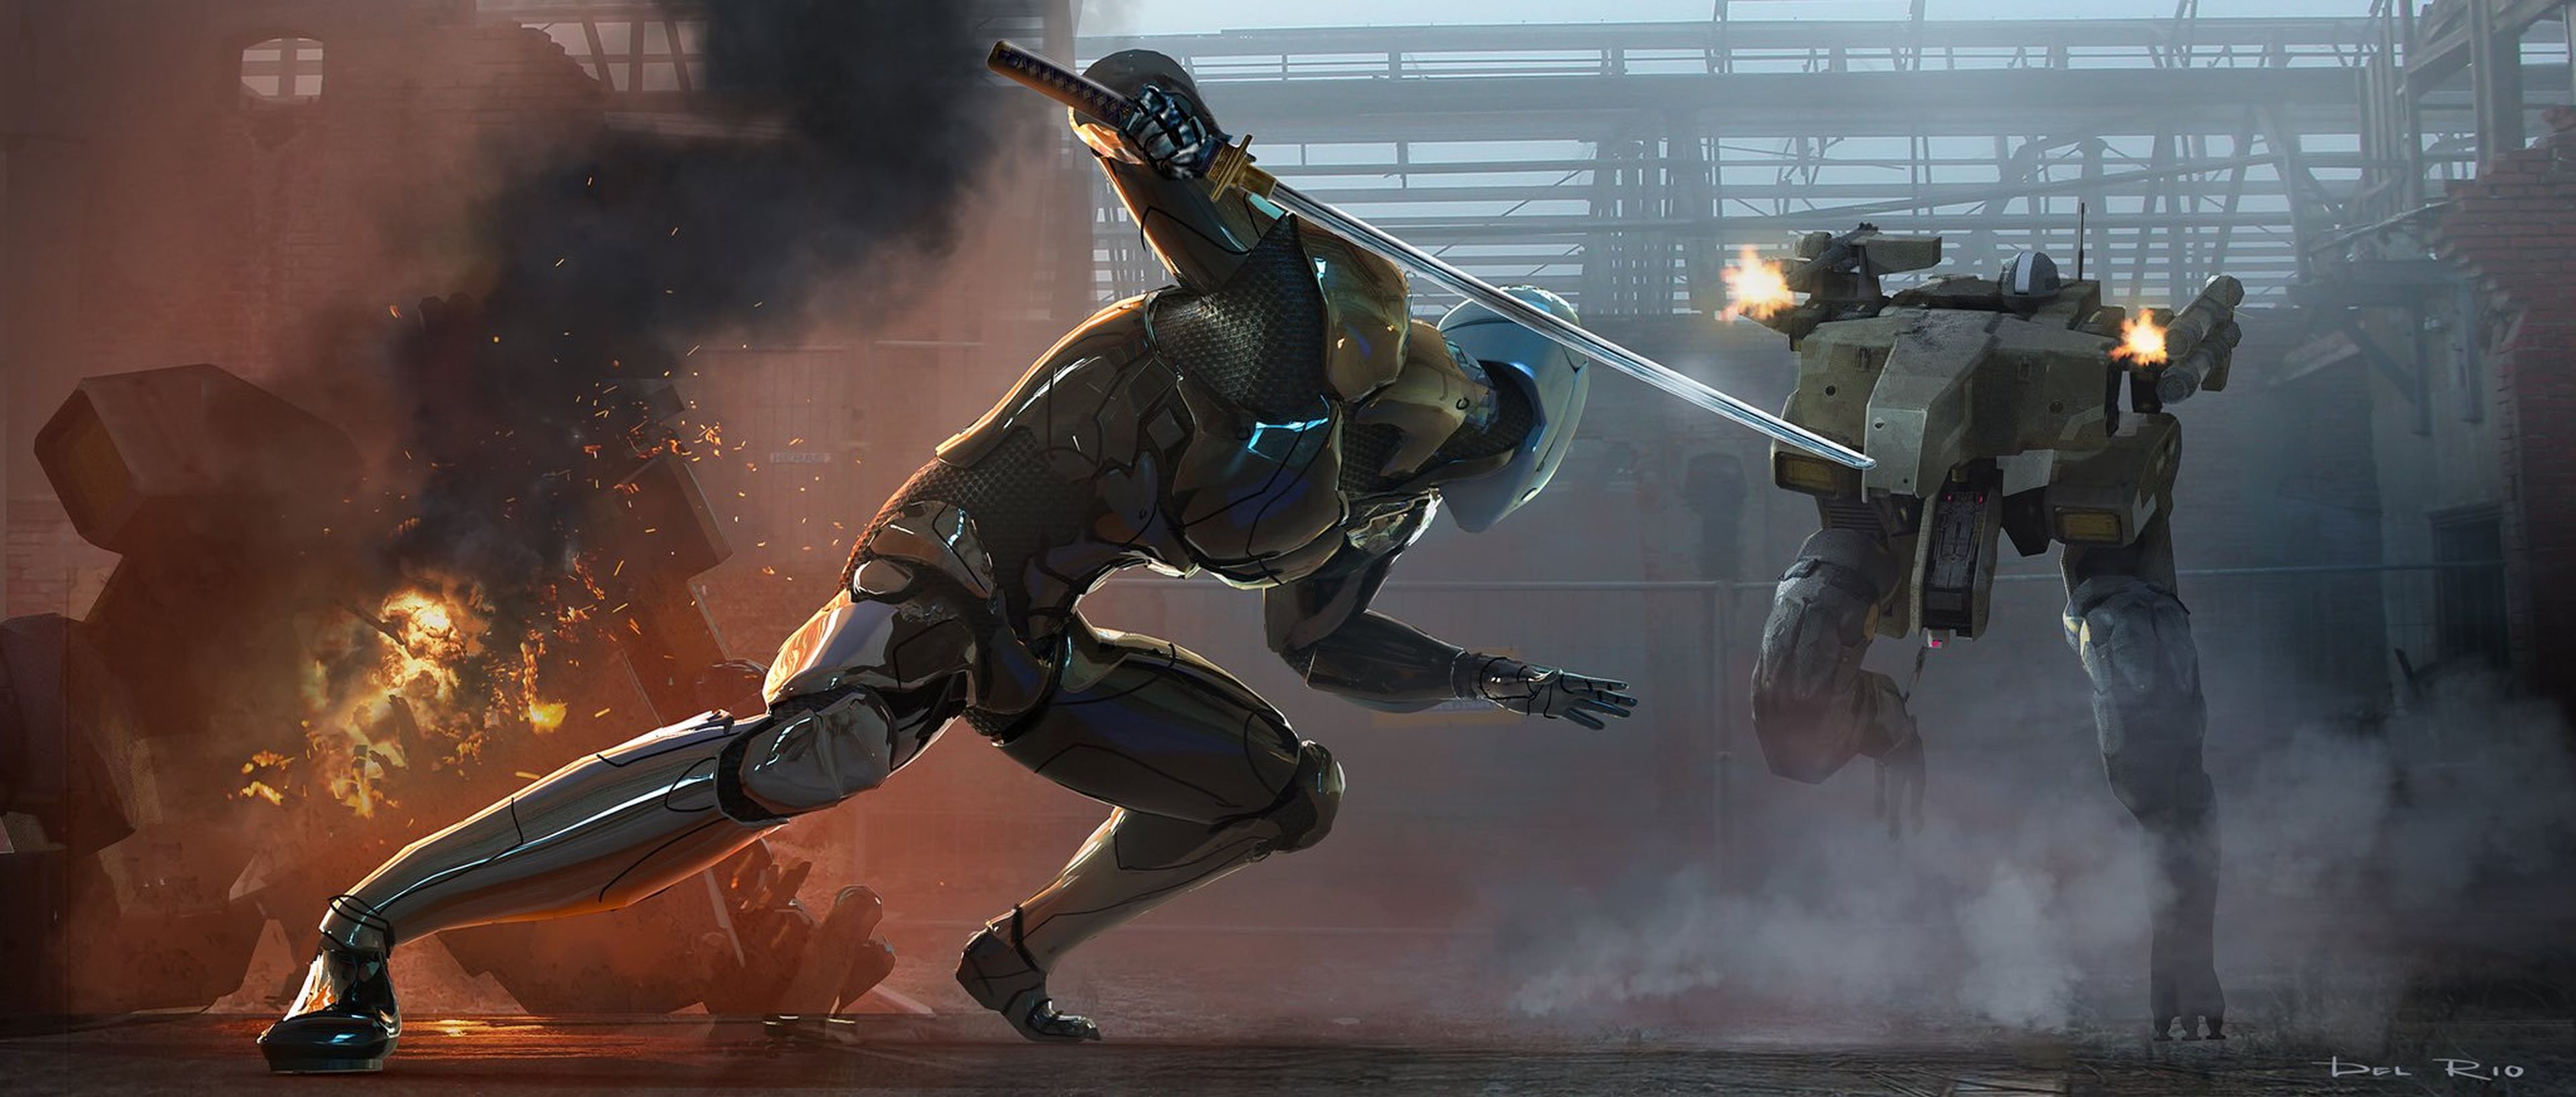 Arte conceptual de la película de Metal Gear Solid por Eddie del Rio